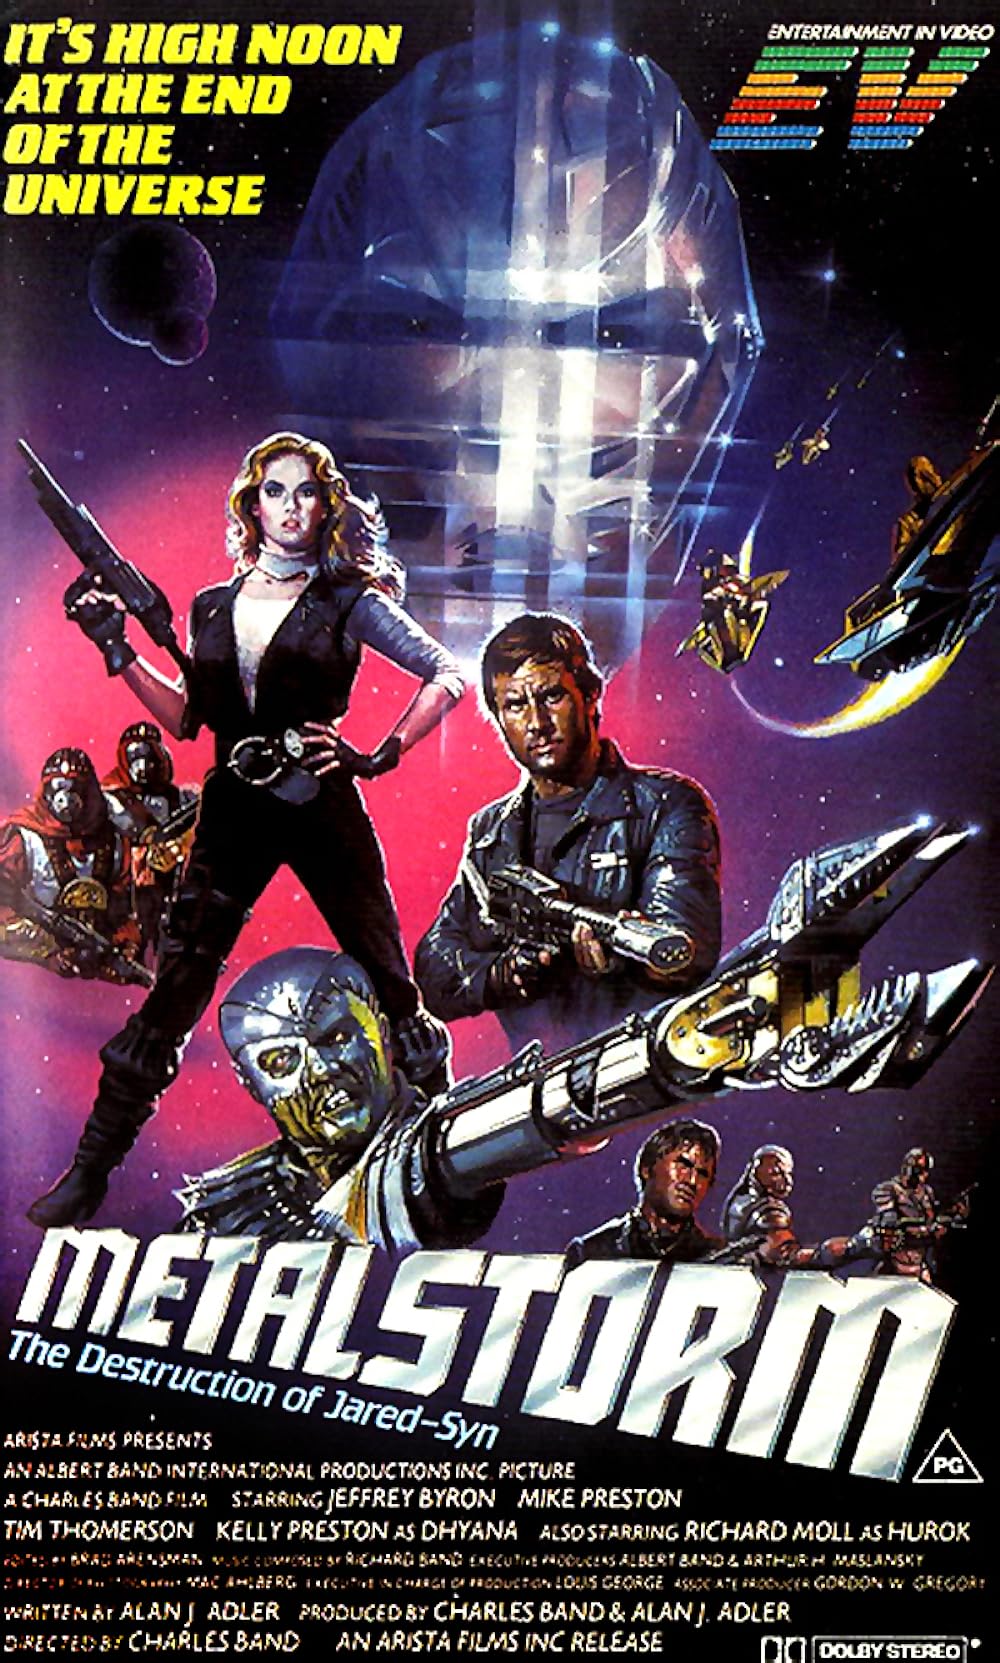 Metalstorm: The Destruction of Jared-Syn (1983) 192Kbps 23.976Fps 48Khz 2.0Ch VHS Turkish Audio TAC